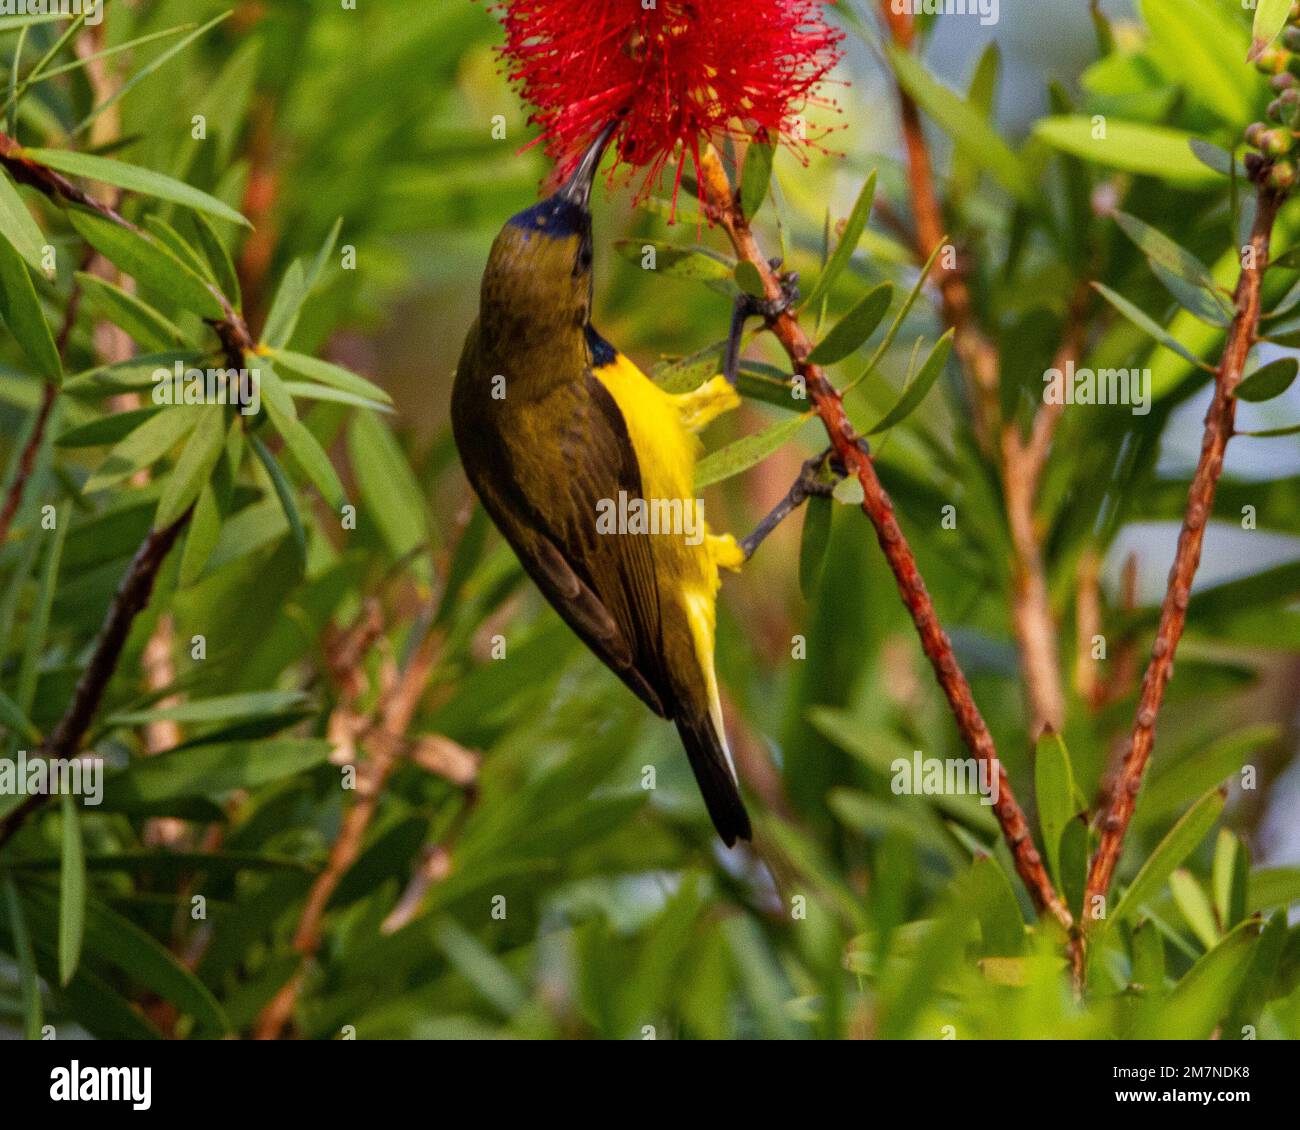 Olive backed sunbird feeding on red bottlebrush flowers Stock Photo